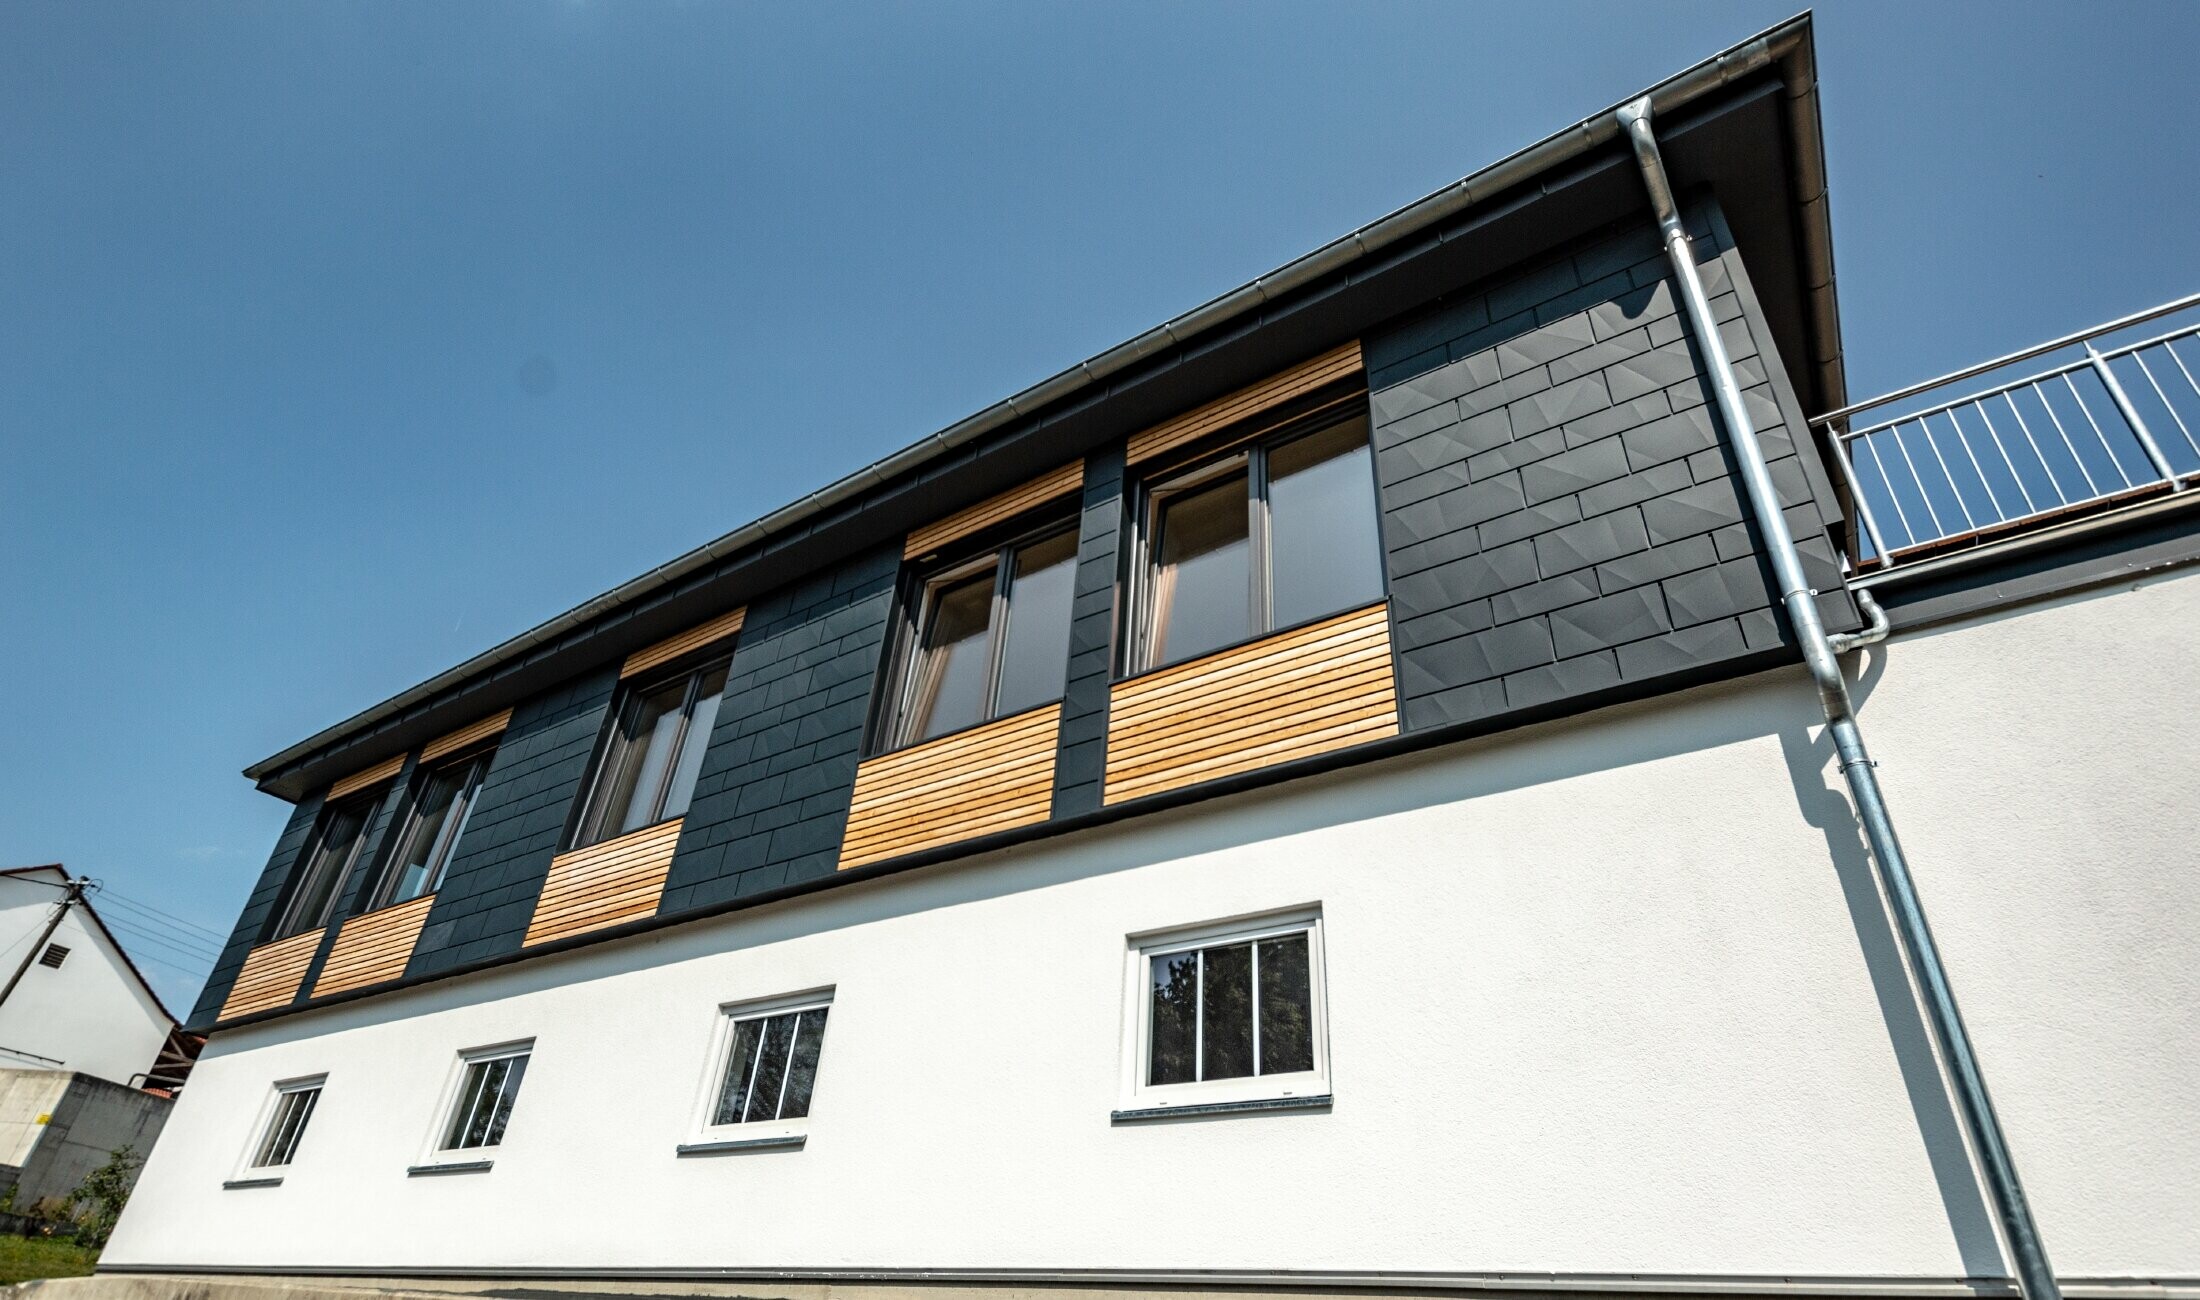 Fassadengestaltung mit unterschiedlichen Baustoffen: verwendet wurden Aluminium PREFA Siding.X in Anthrazit, eine horizontale Holzfassade und eine weiße Putzfassade.